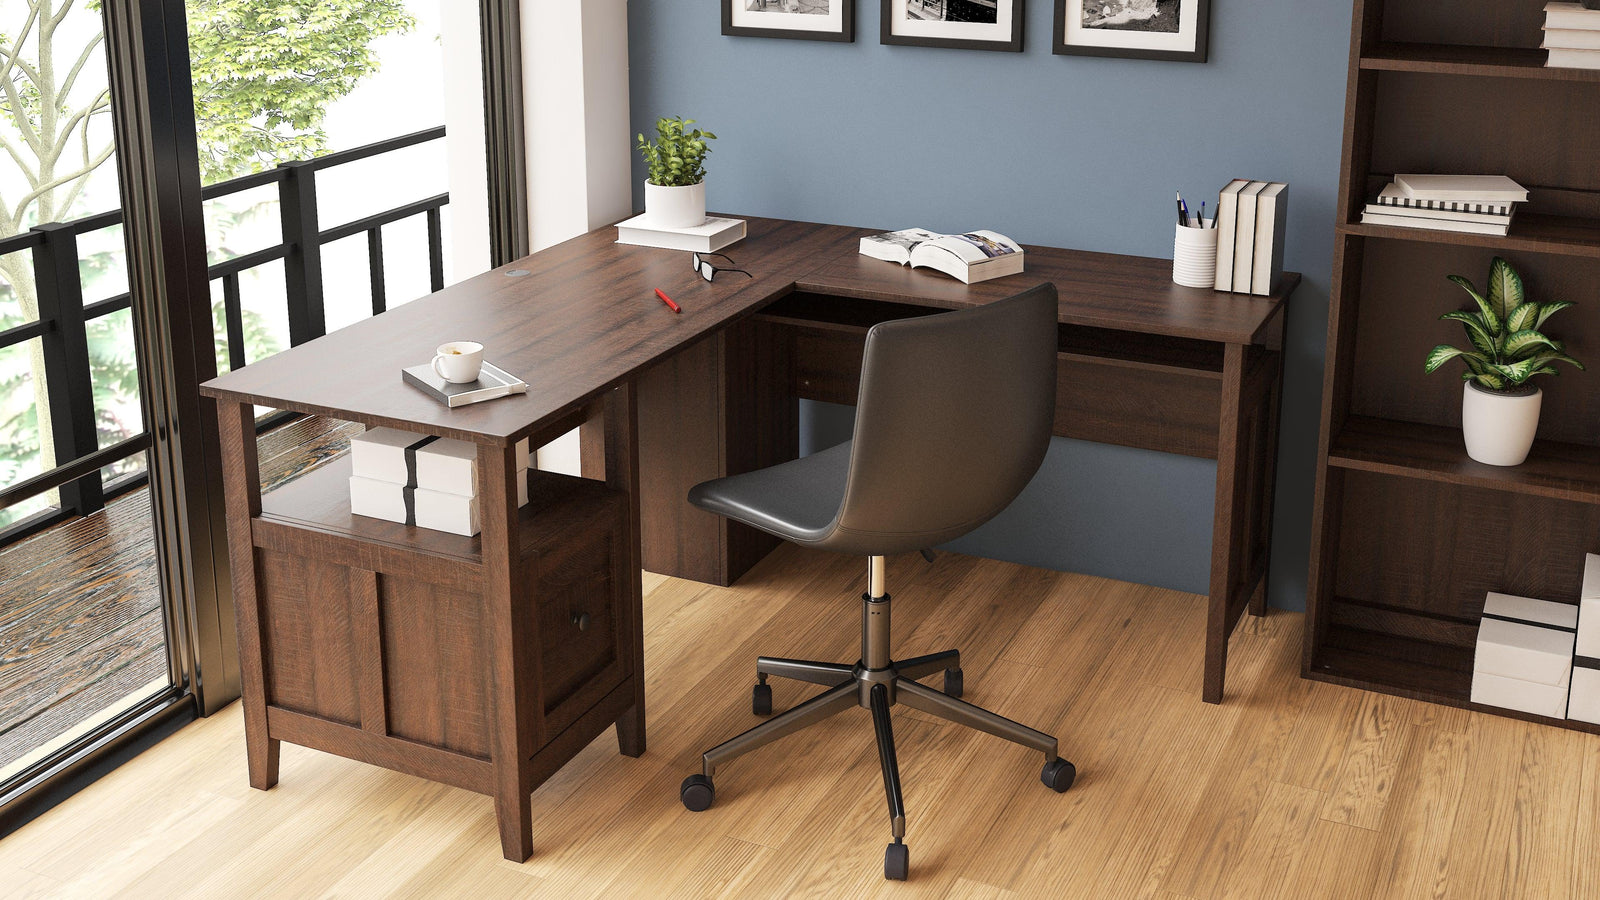 Camiburg Warm Brown 2-Piece Home Office Desk